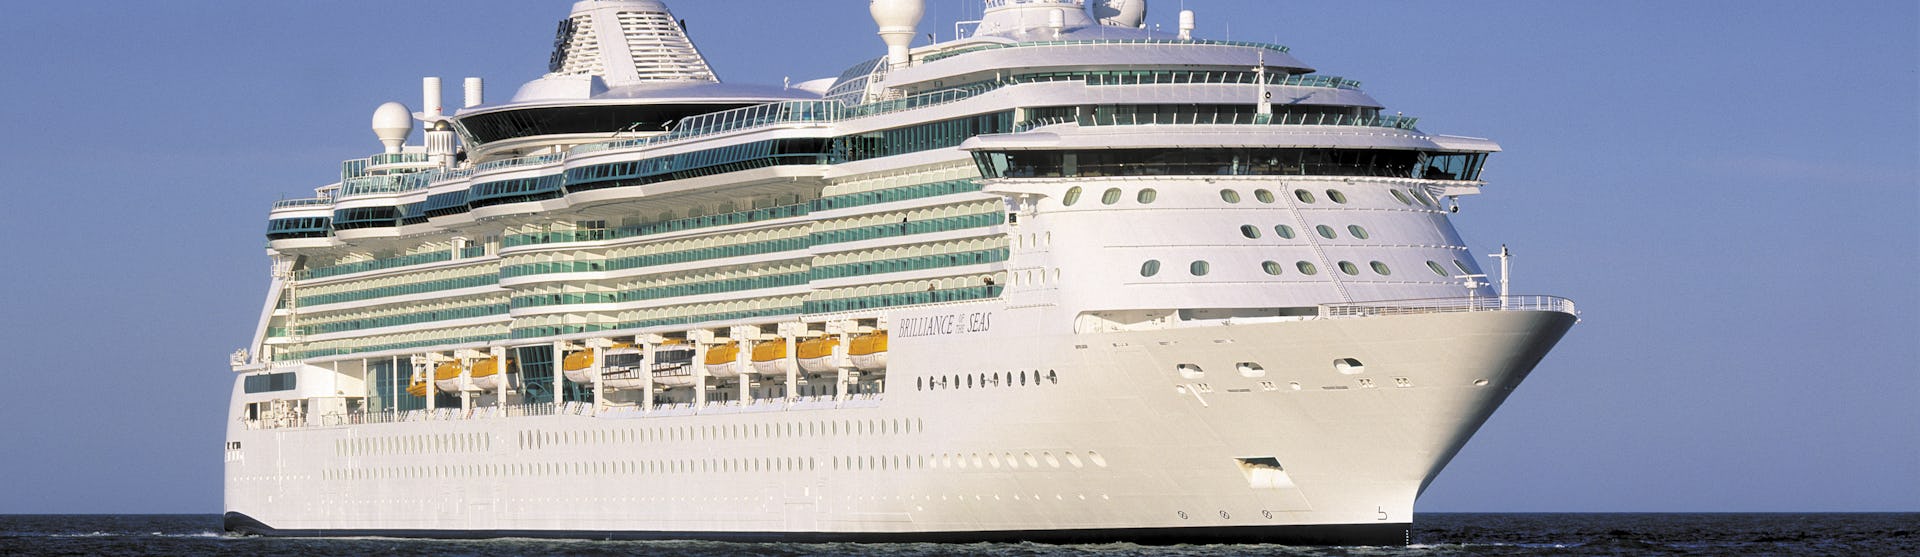 Bild på Brilliance of the Seas tagen framifrån när fartyget kryssar fram på öppet hav.